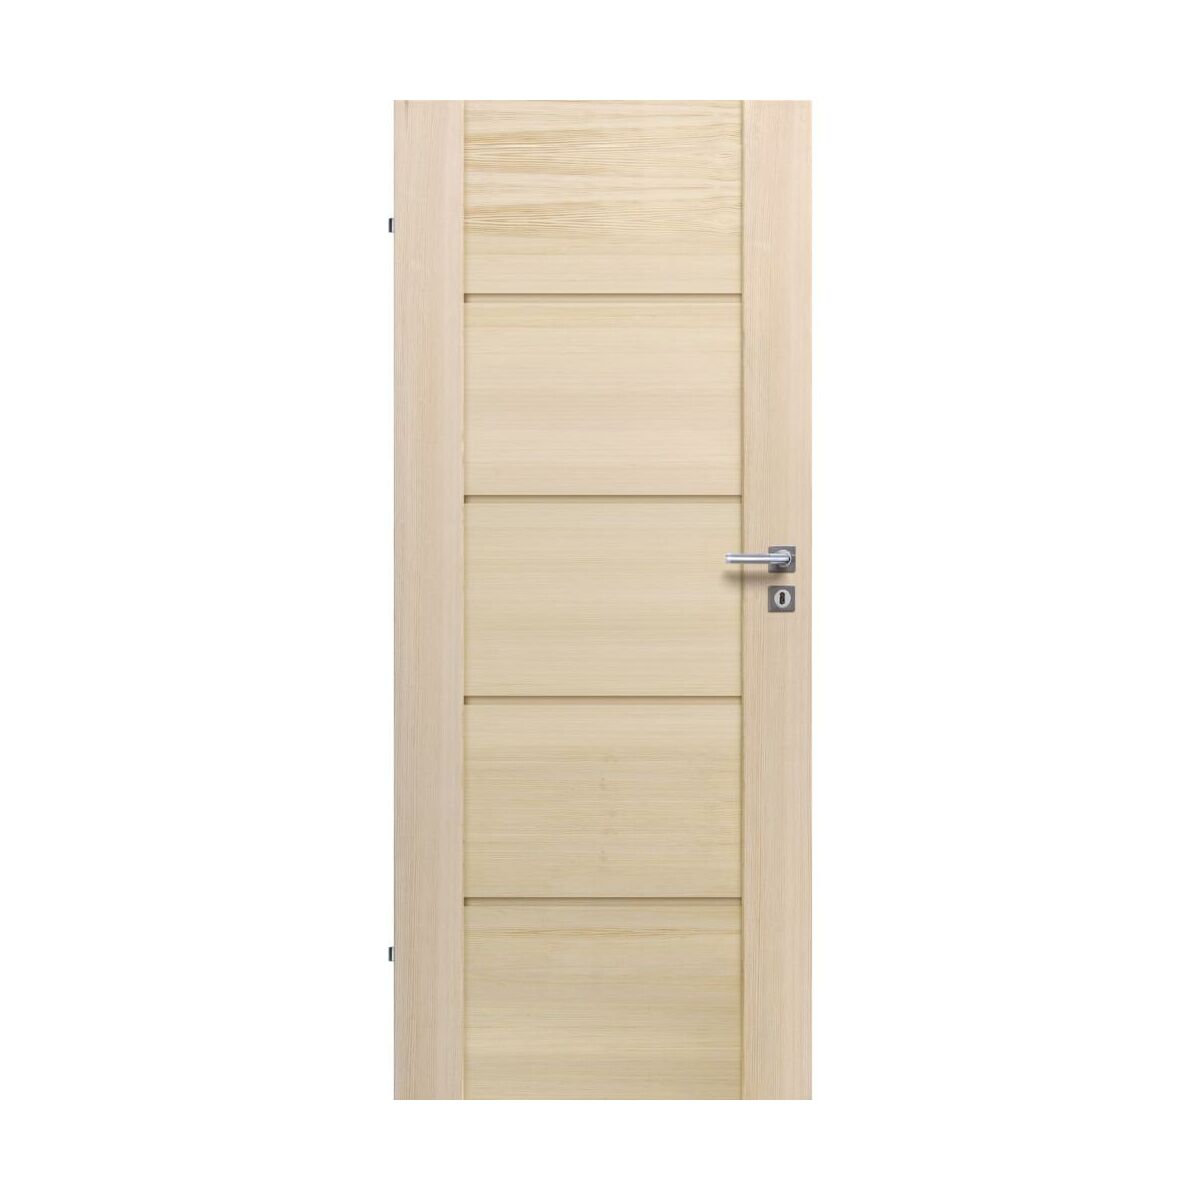 Drzwi wewnętrzne drewniane pełne Triest Modern 90 Lewe Radex